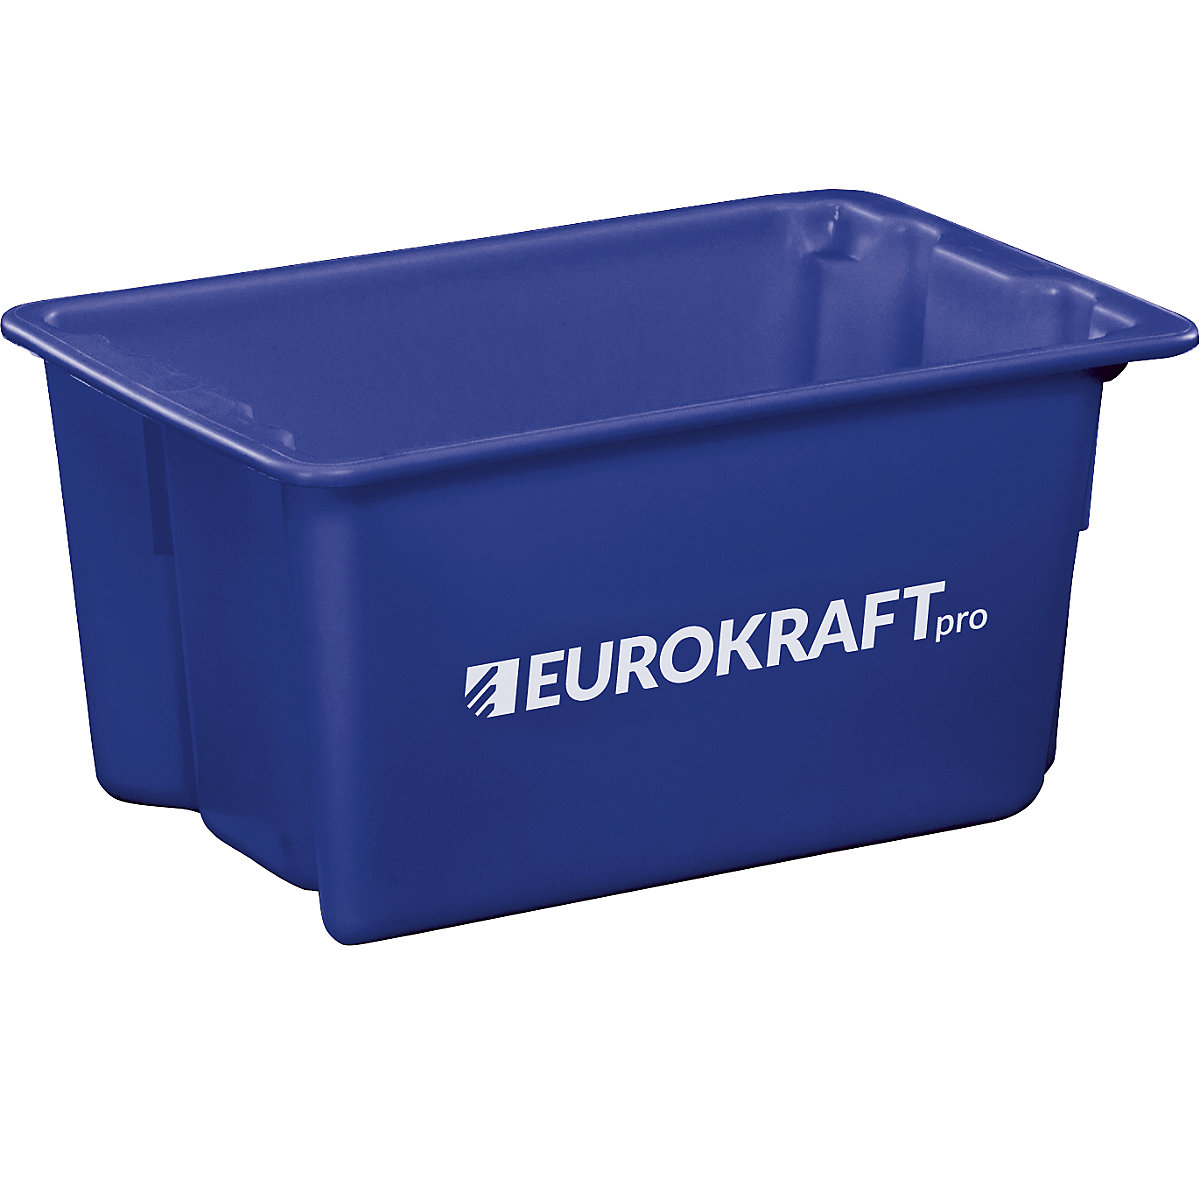 EUROKRAFTpro – Recipiente empilhável giratório em polipropileno próprio para alimentos, capacidade 50 litros, UE 3 unid., paredes e fundo fechados, azul